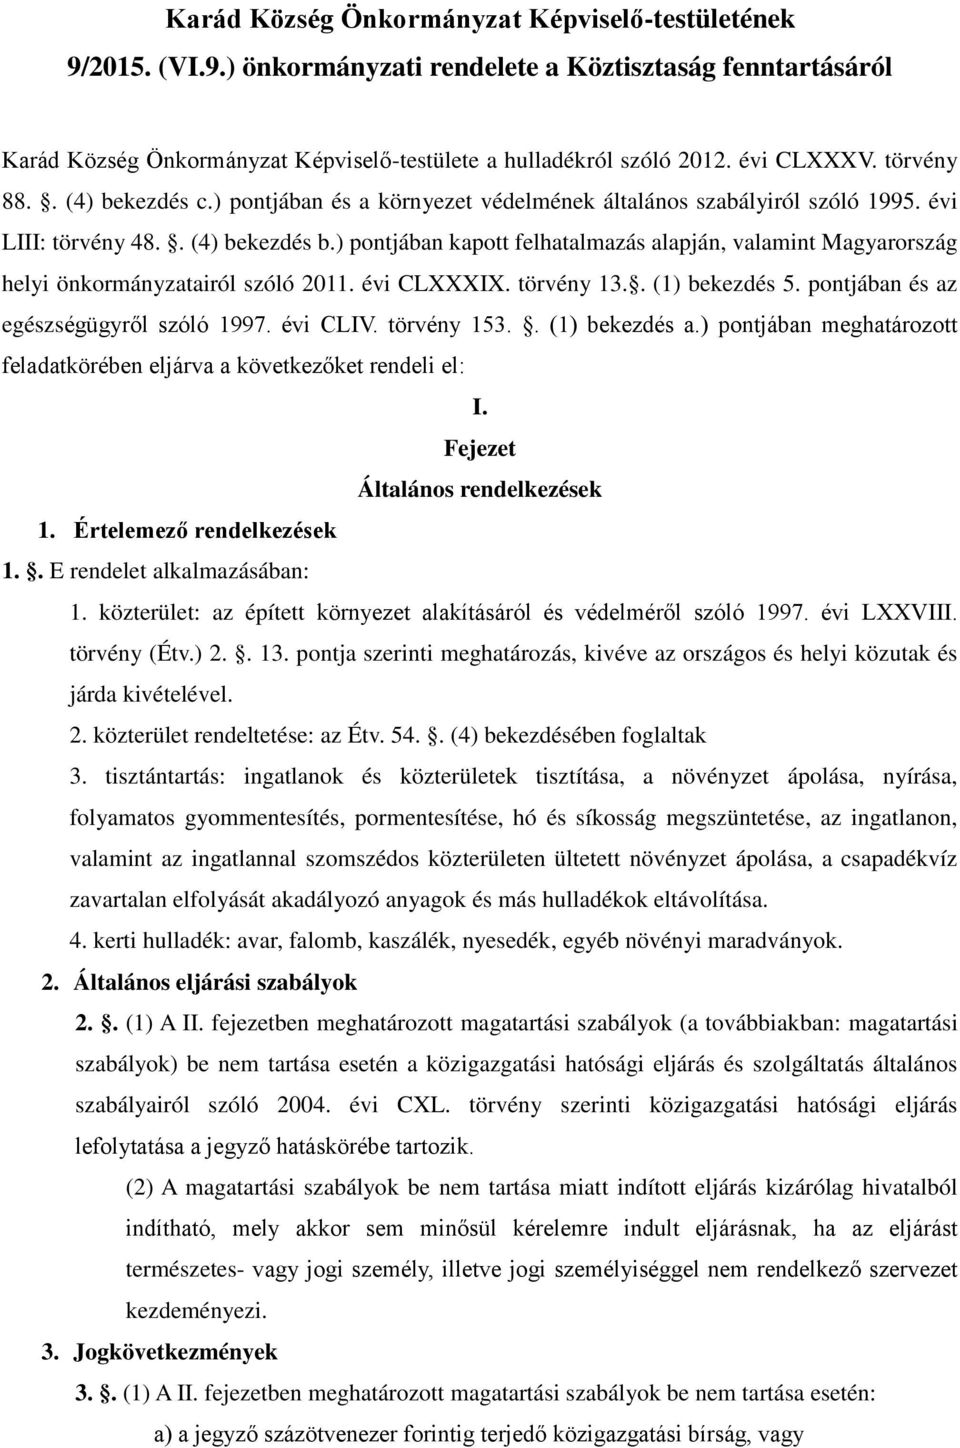 ) pontjában kapott felhatalmazás alapján, valamint Magyarország helyi önkormányzatairól szóló 2011. évi CLXXXIX. törvény 13.. (1) bekezdés 5. pontjában és az egészségügyről szóló 1997. évi CLIV.